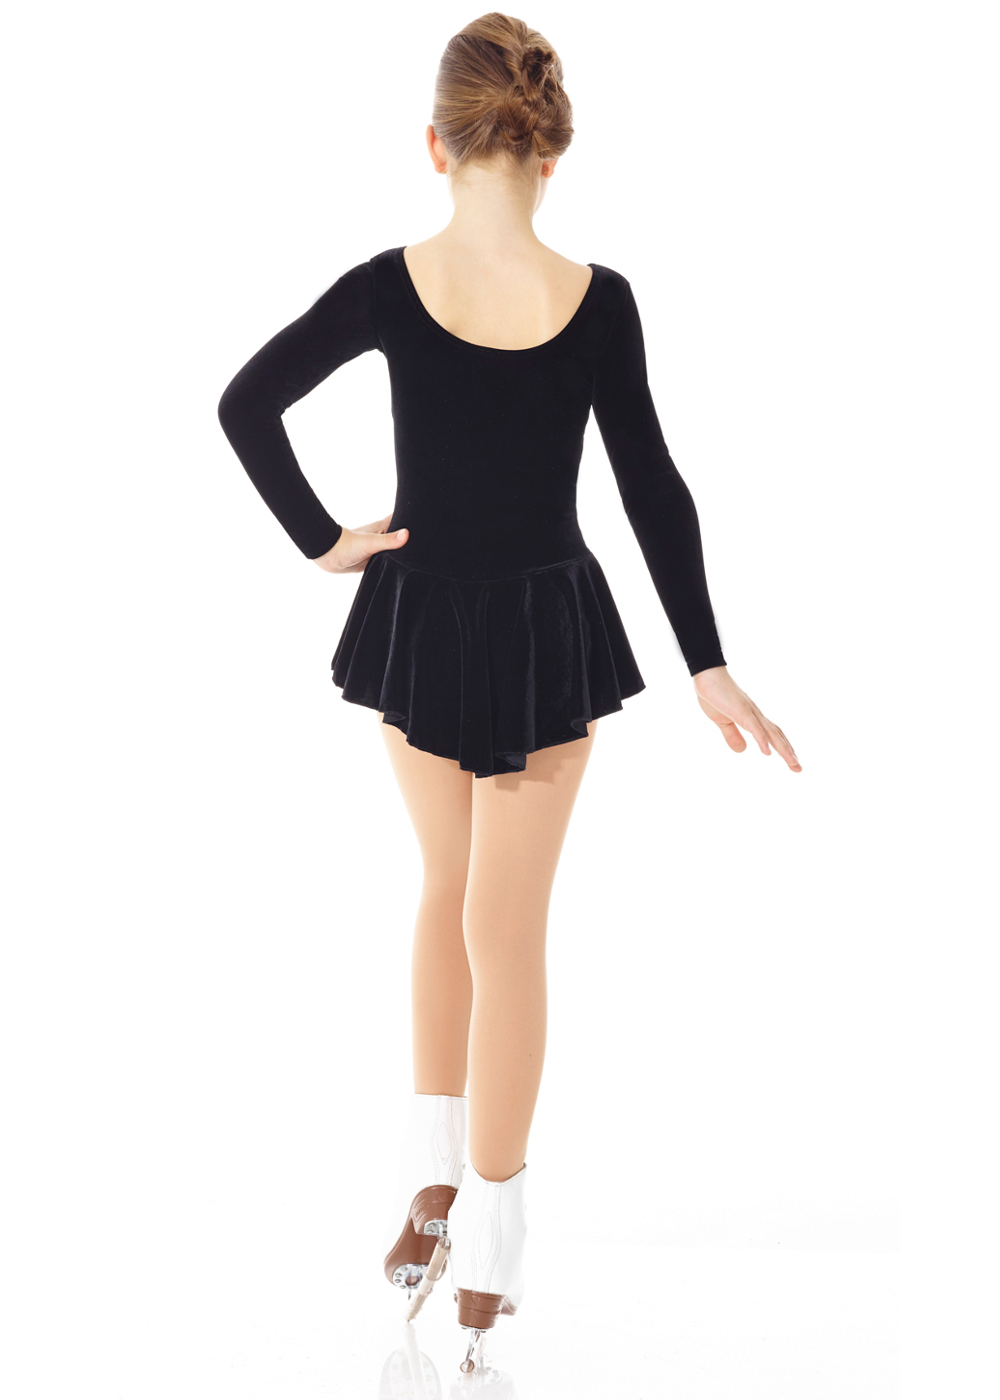 Mondor 2850 Examination Ice Skating Dress in Black Velvet. Adult Sizes